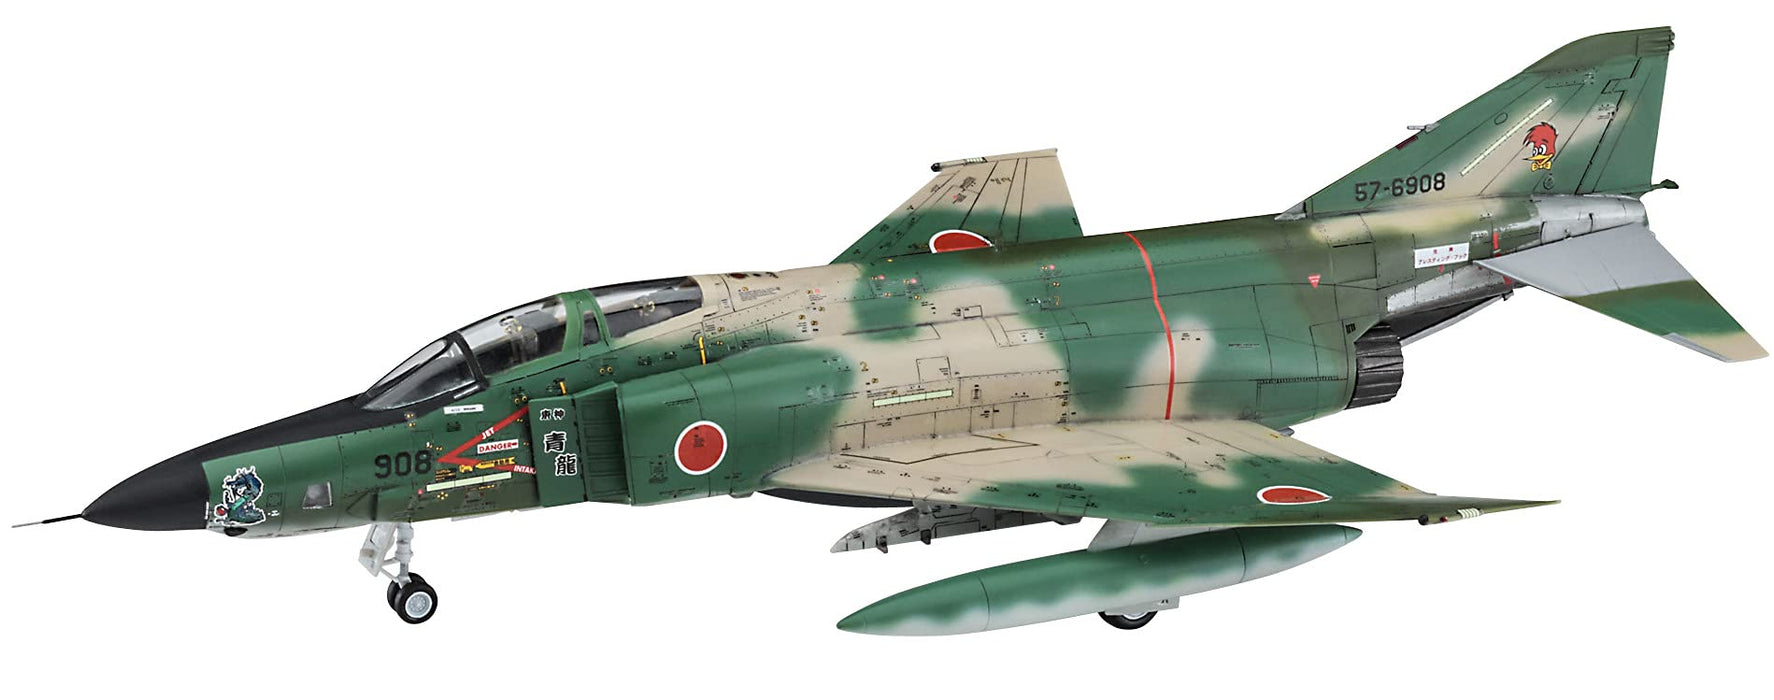 HASEGAWA 1/72 Rf-4E Phantom Ll 501Sq 1994 Acm Special Plastic Model